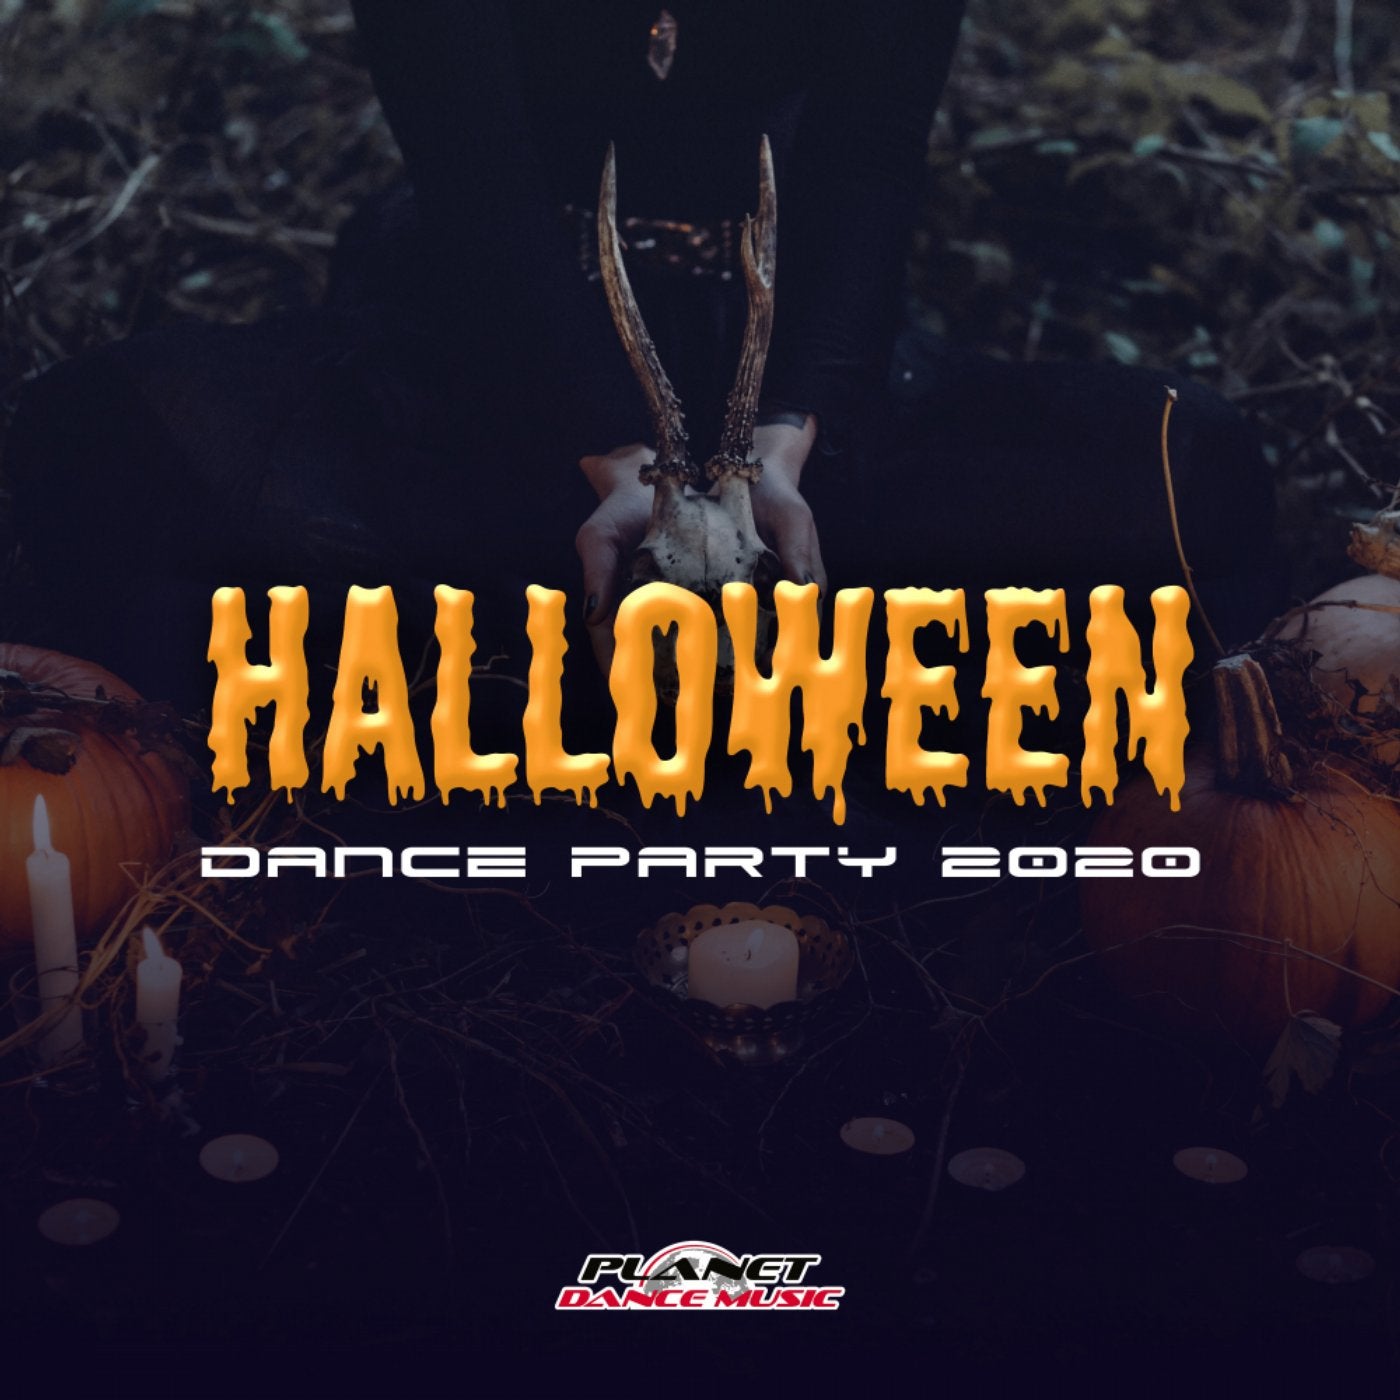 Halloween Dance Party 2020